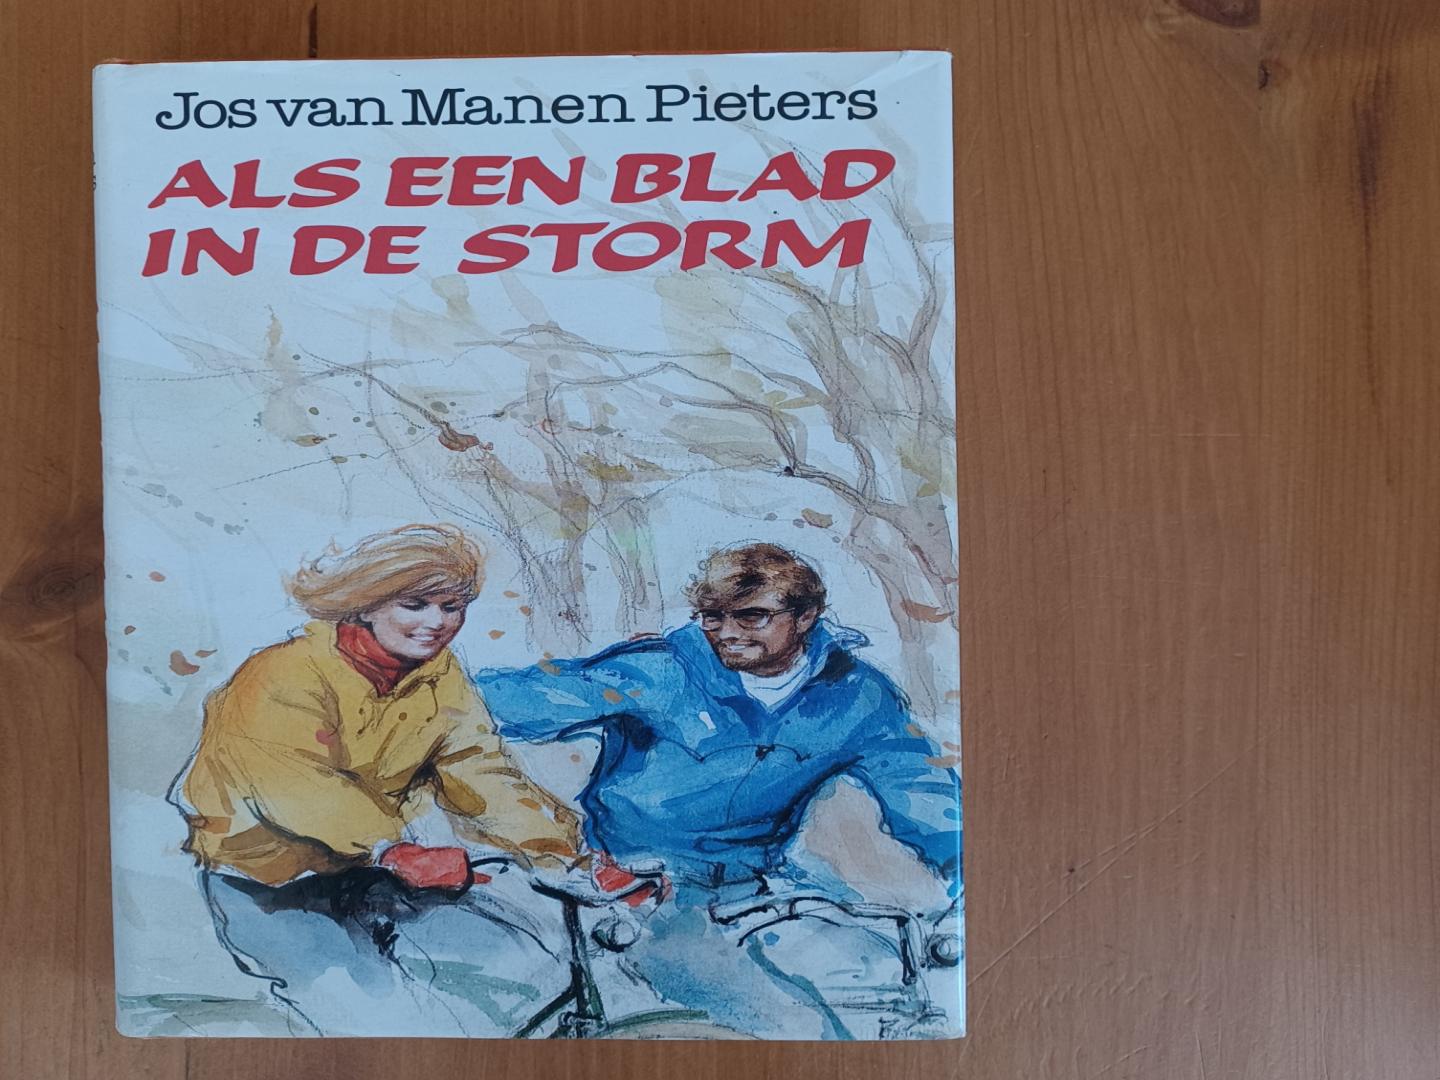 Manen Pieters, J. van - Als een blad in de storm